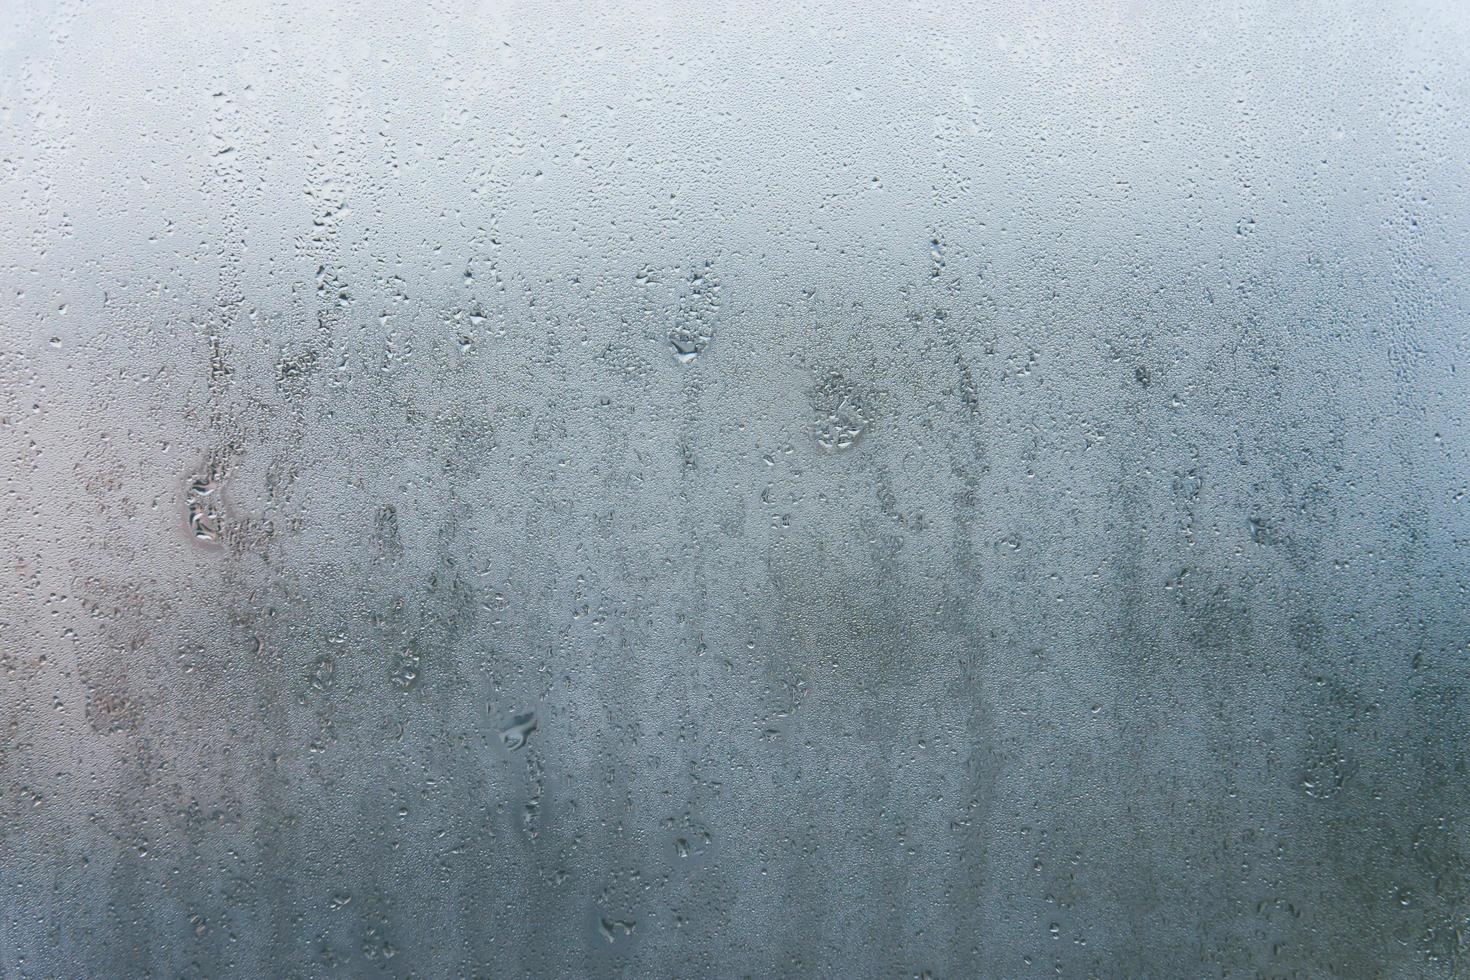 gocce d'acqua sul vetro della finestra foto